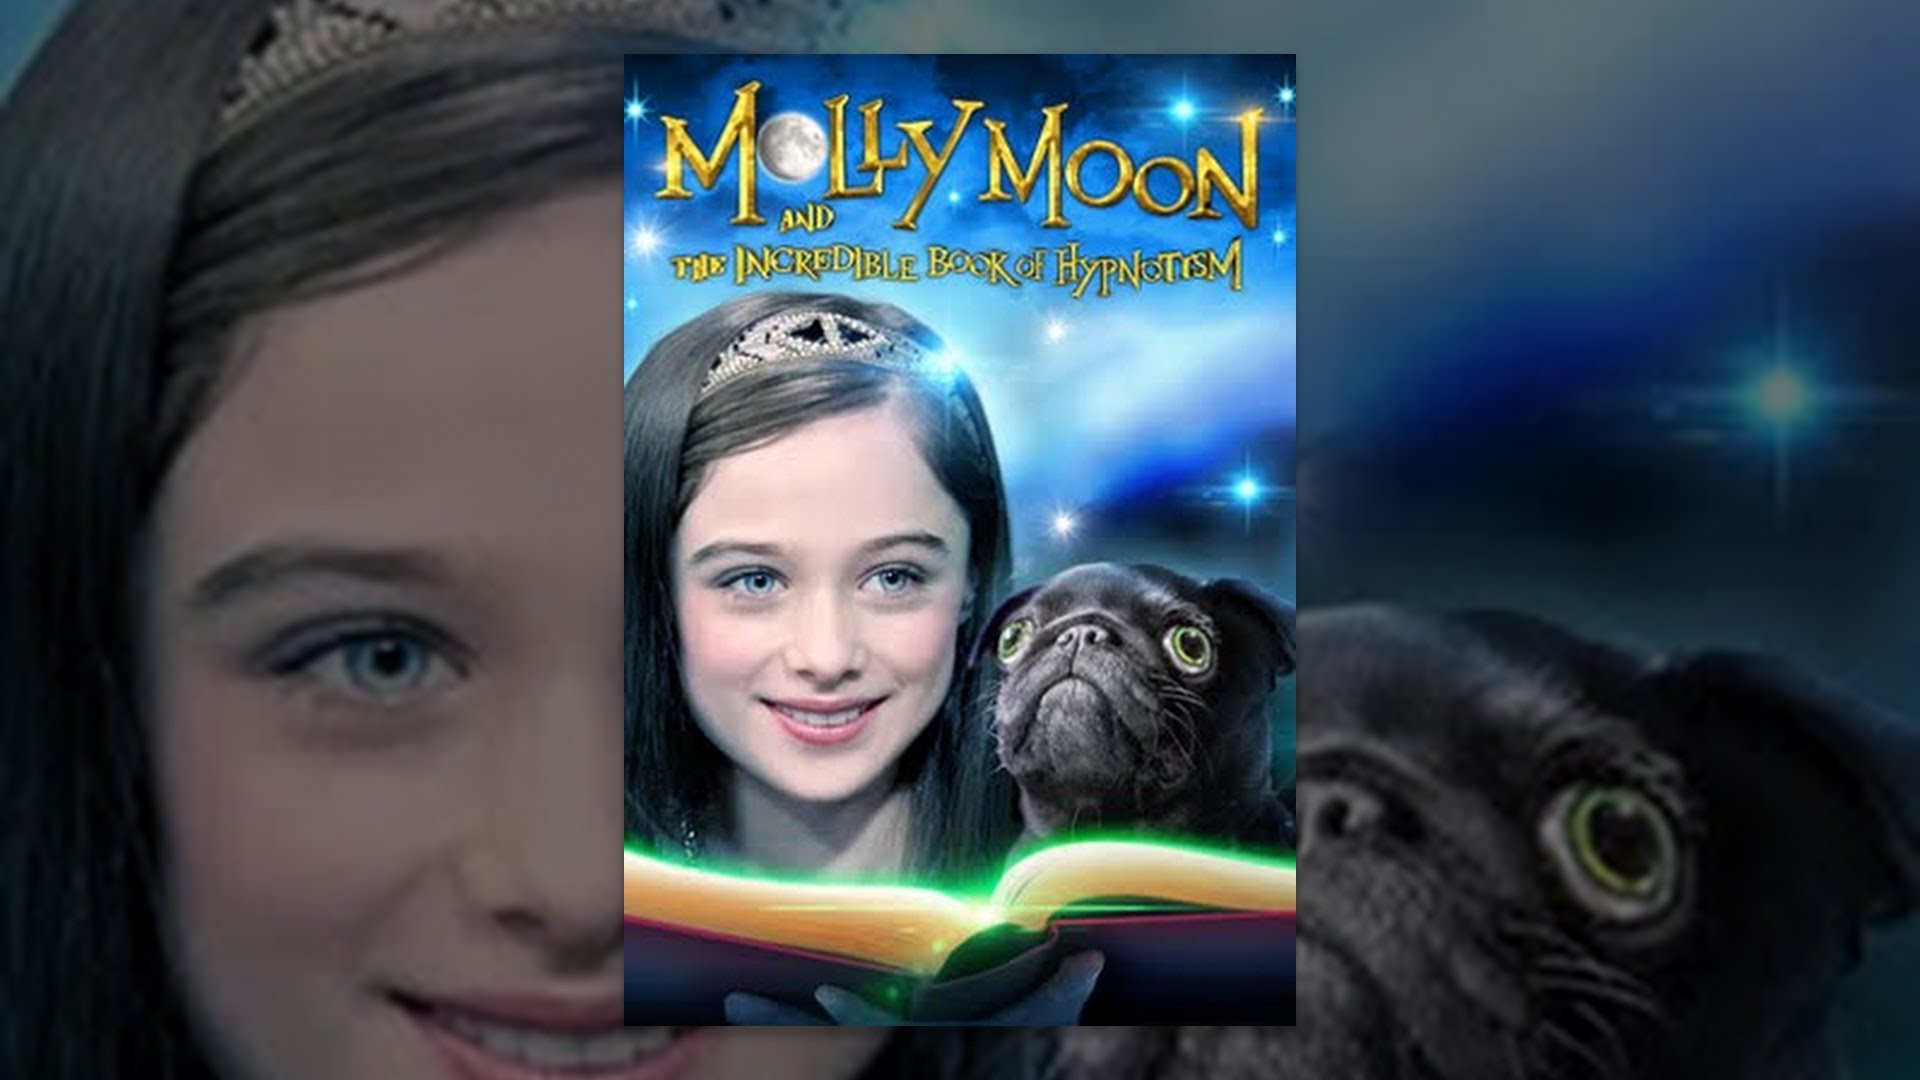 Molly moon facial